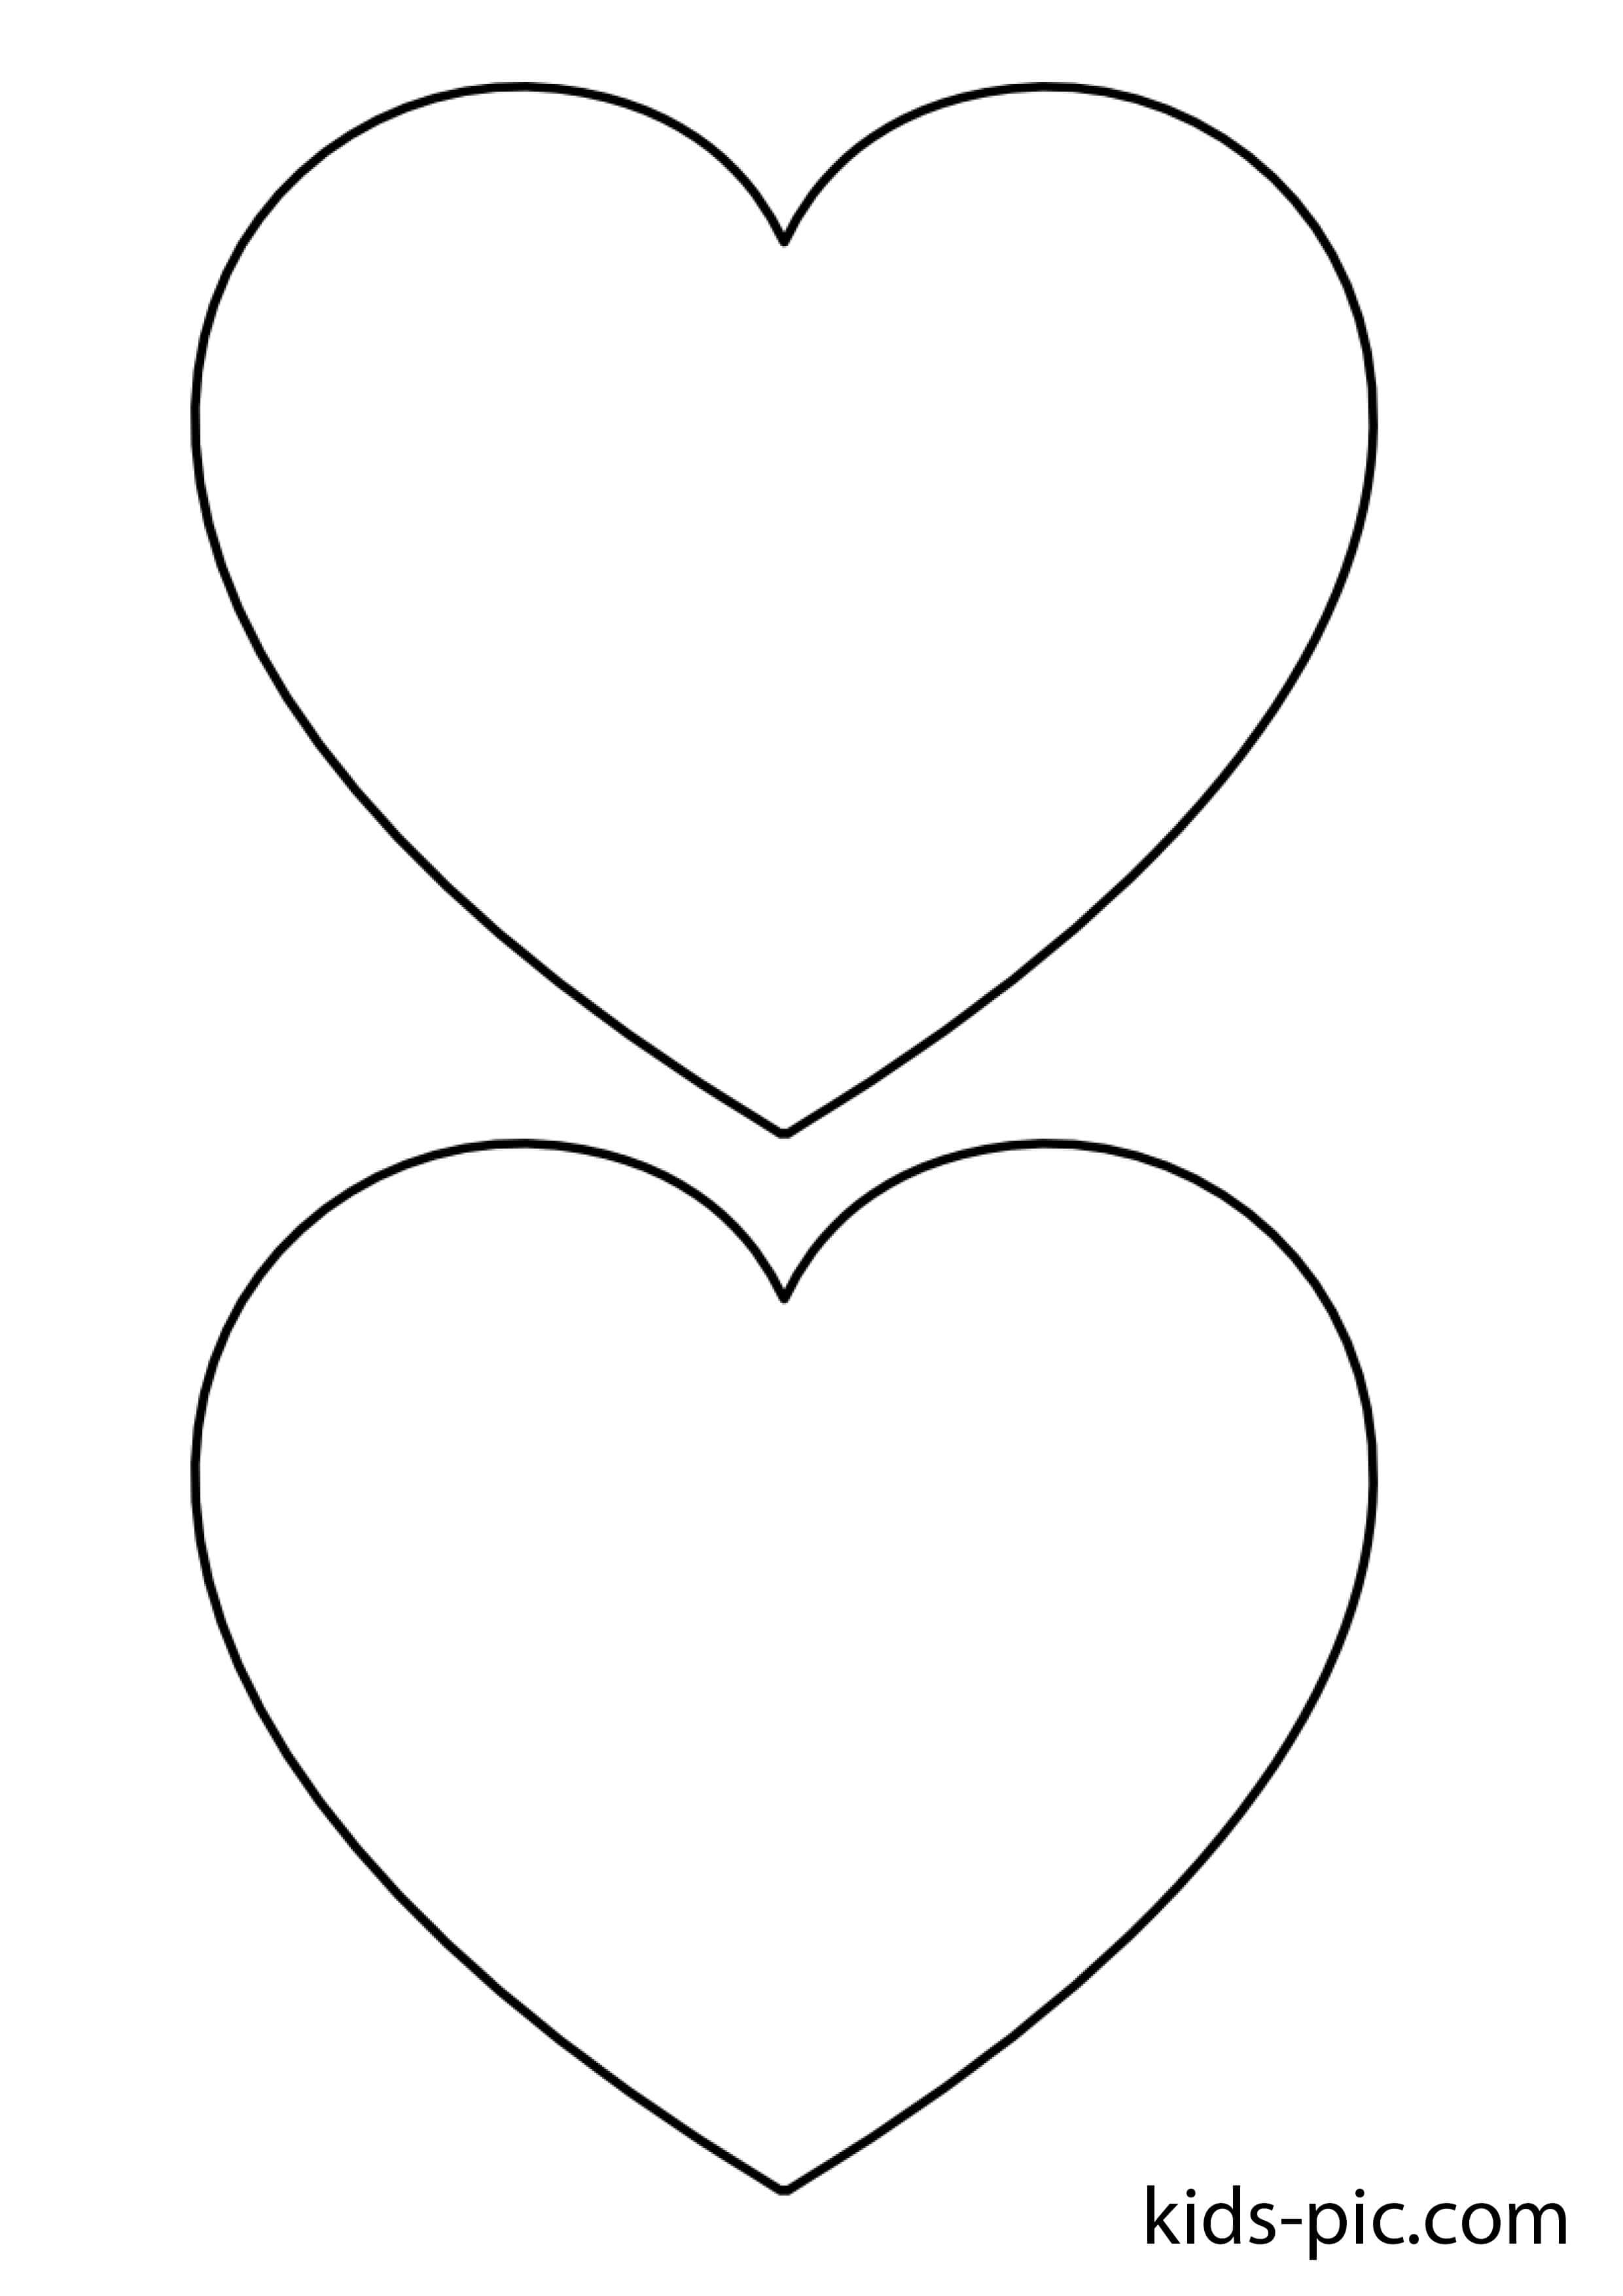 Сердце шаблон для вырезания из бумаги распечатать